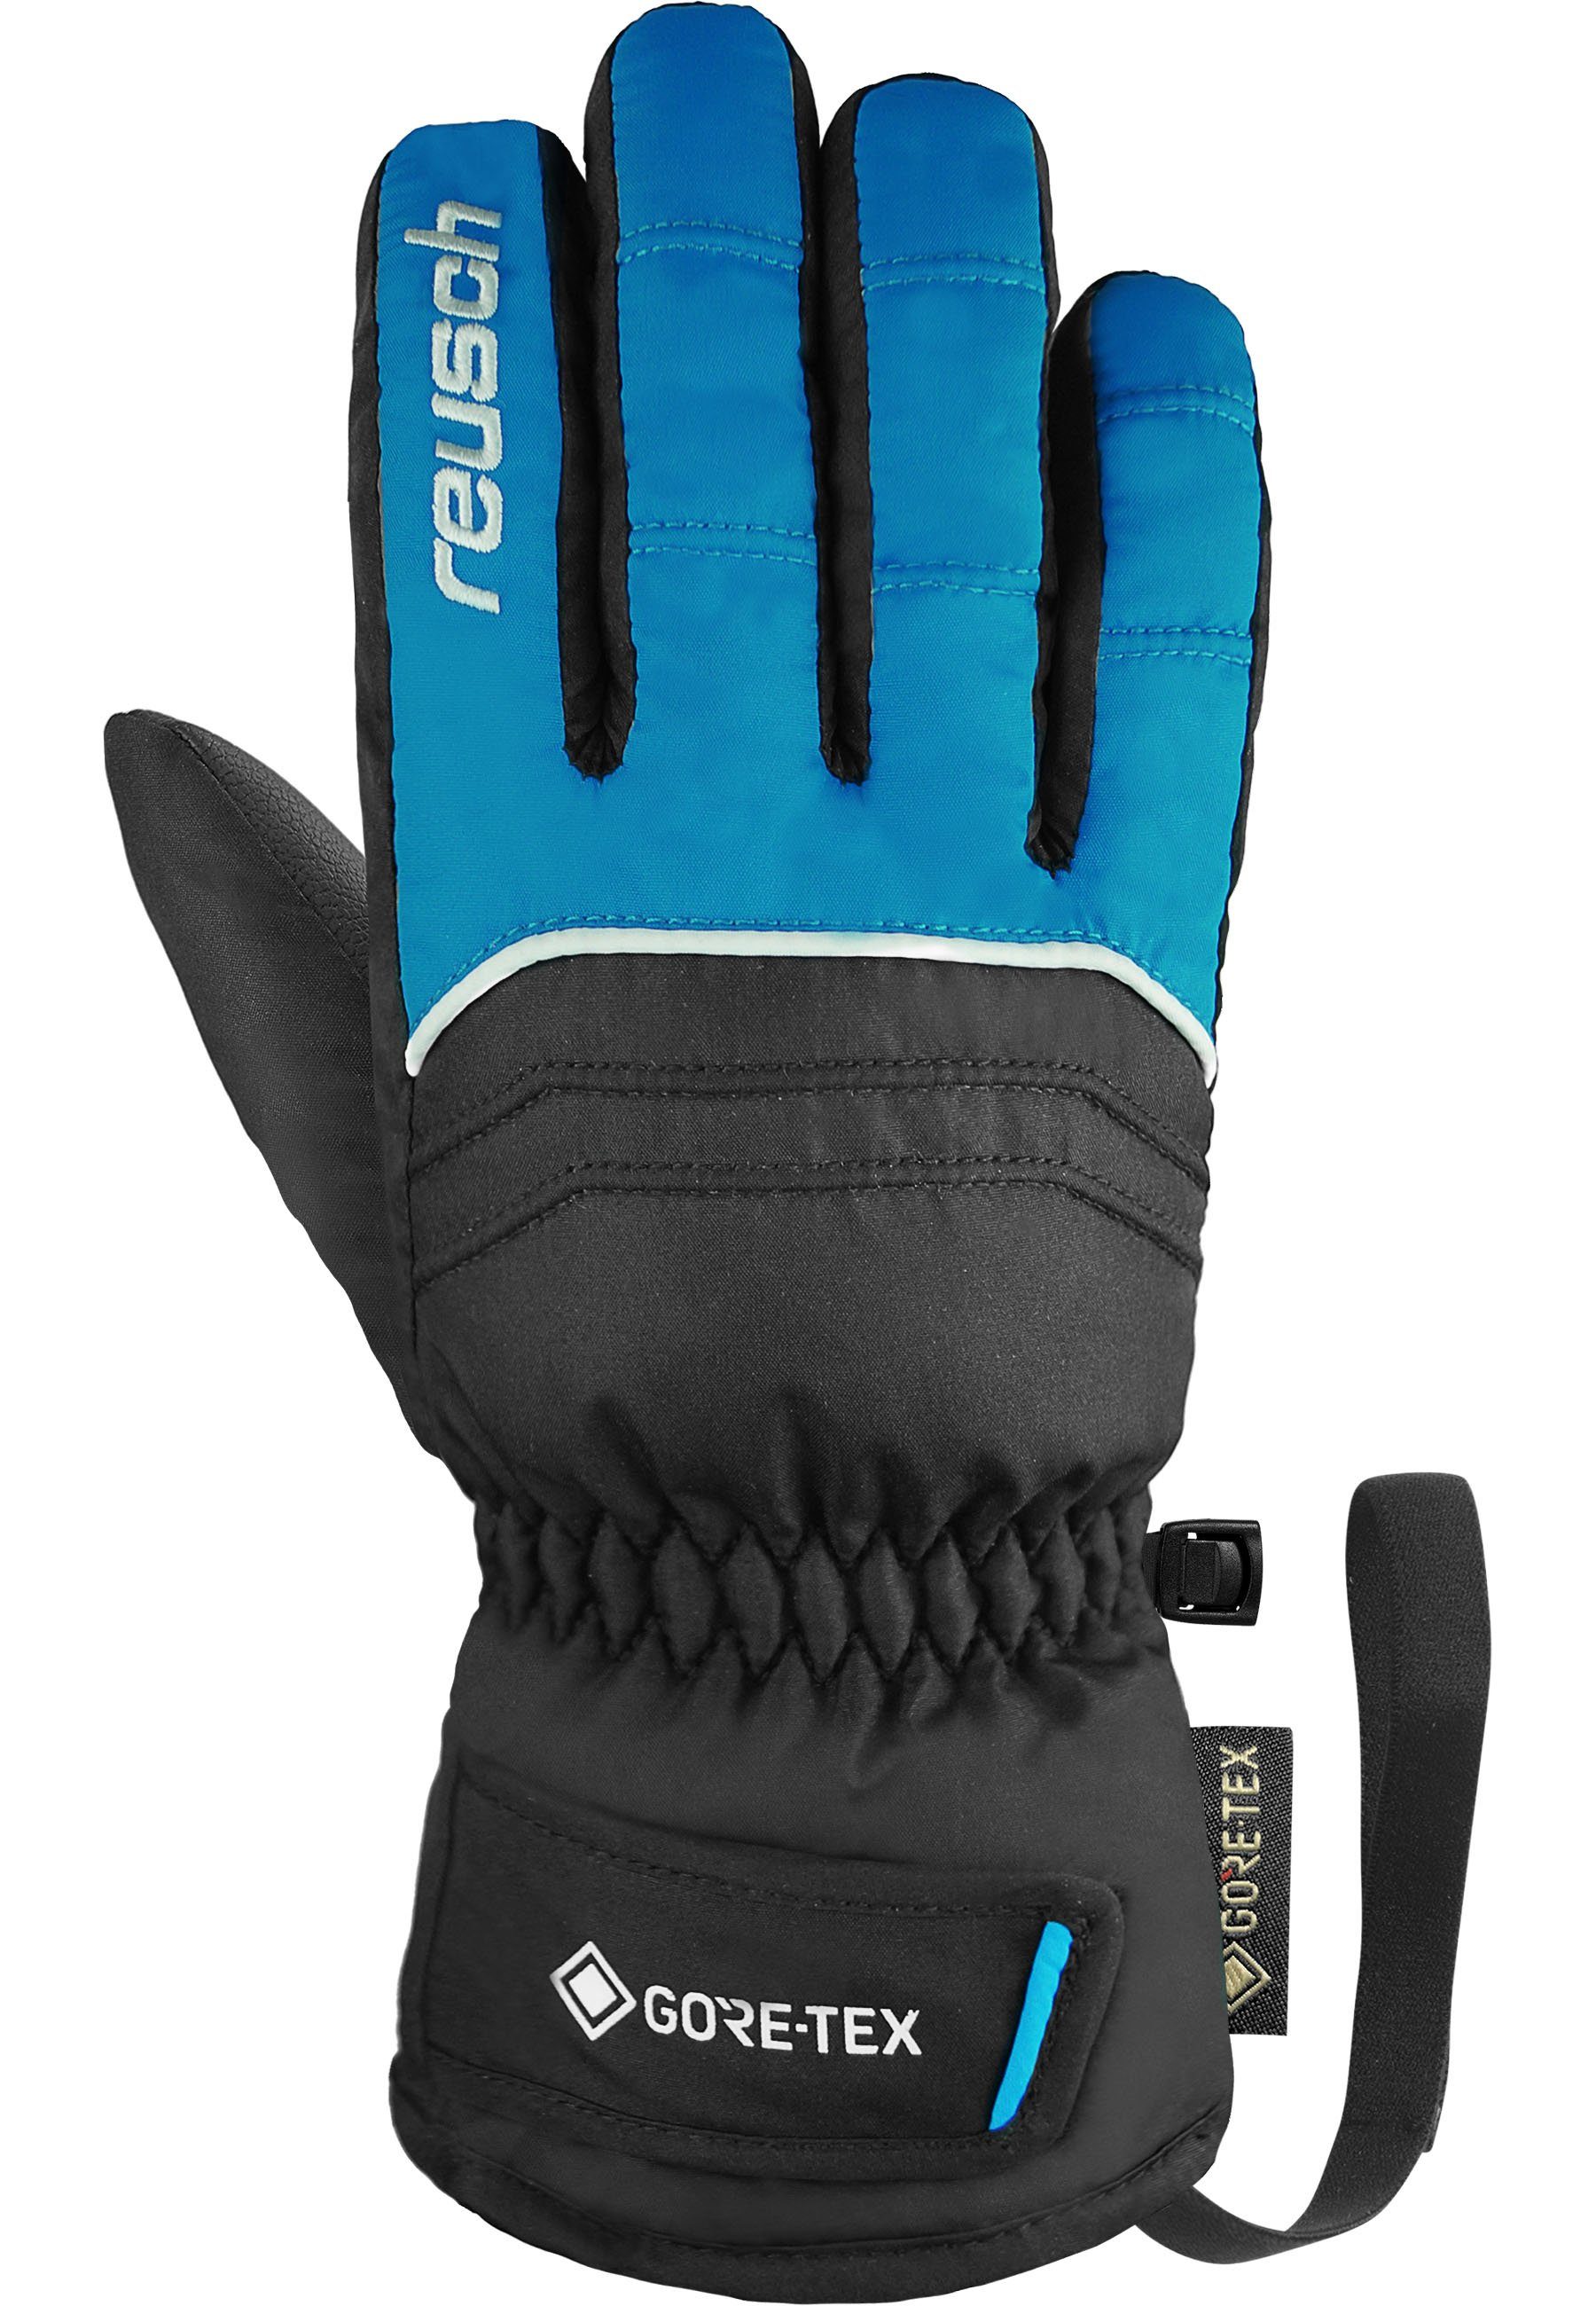 Reusch blau-schwarz GORE-TEX wasserdichter Teddy Funktionsmembran Skihandschuhe mit